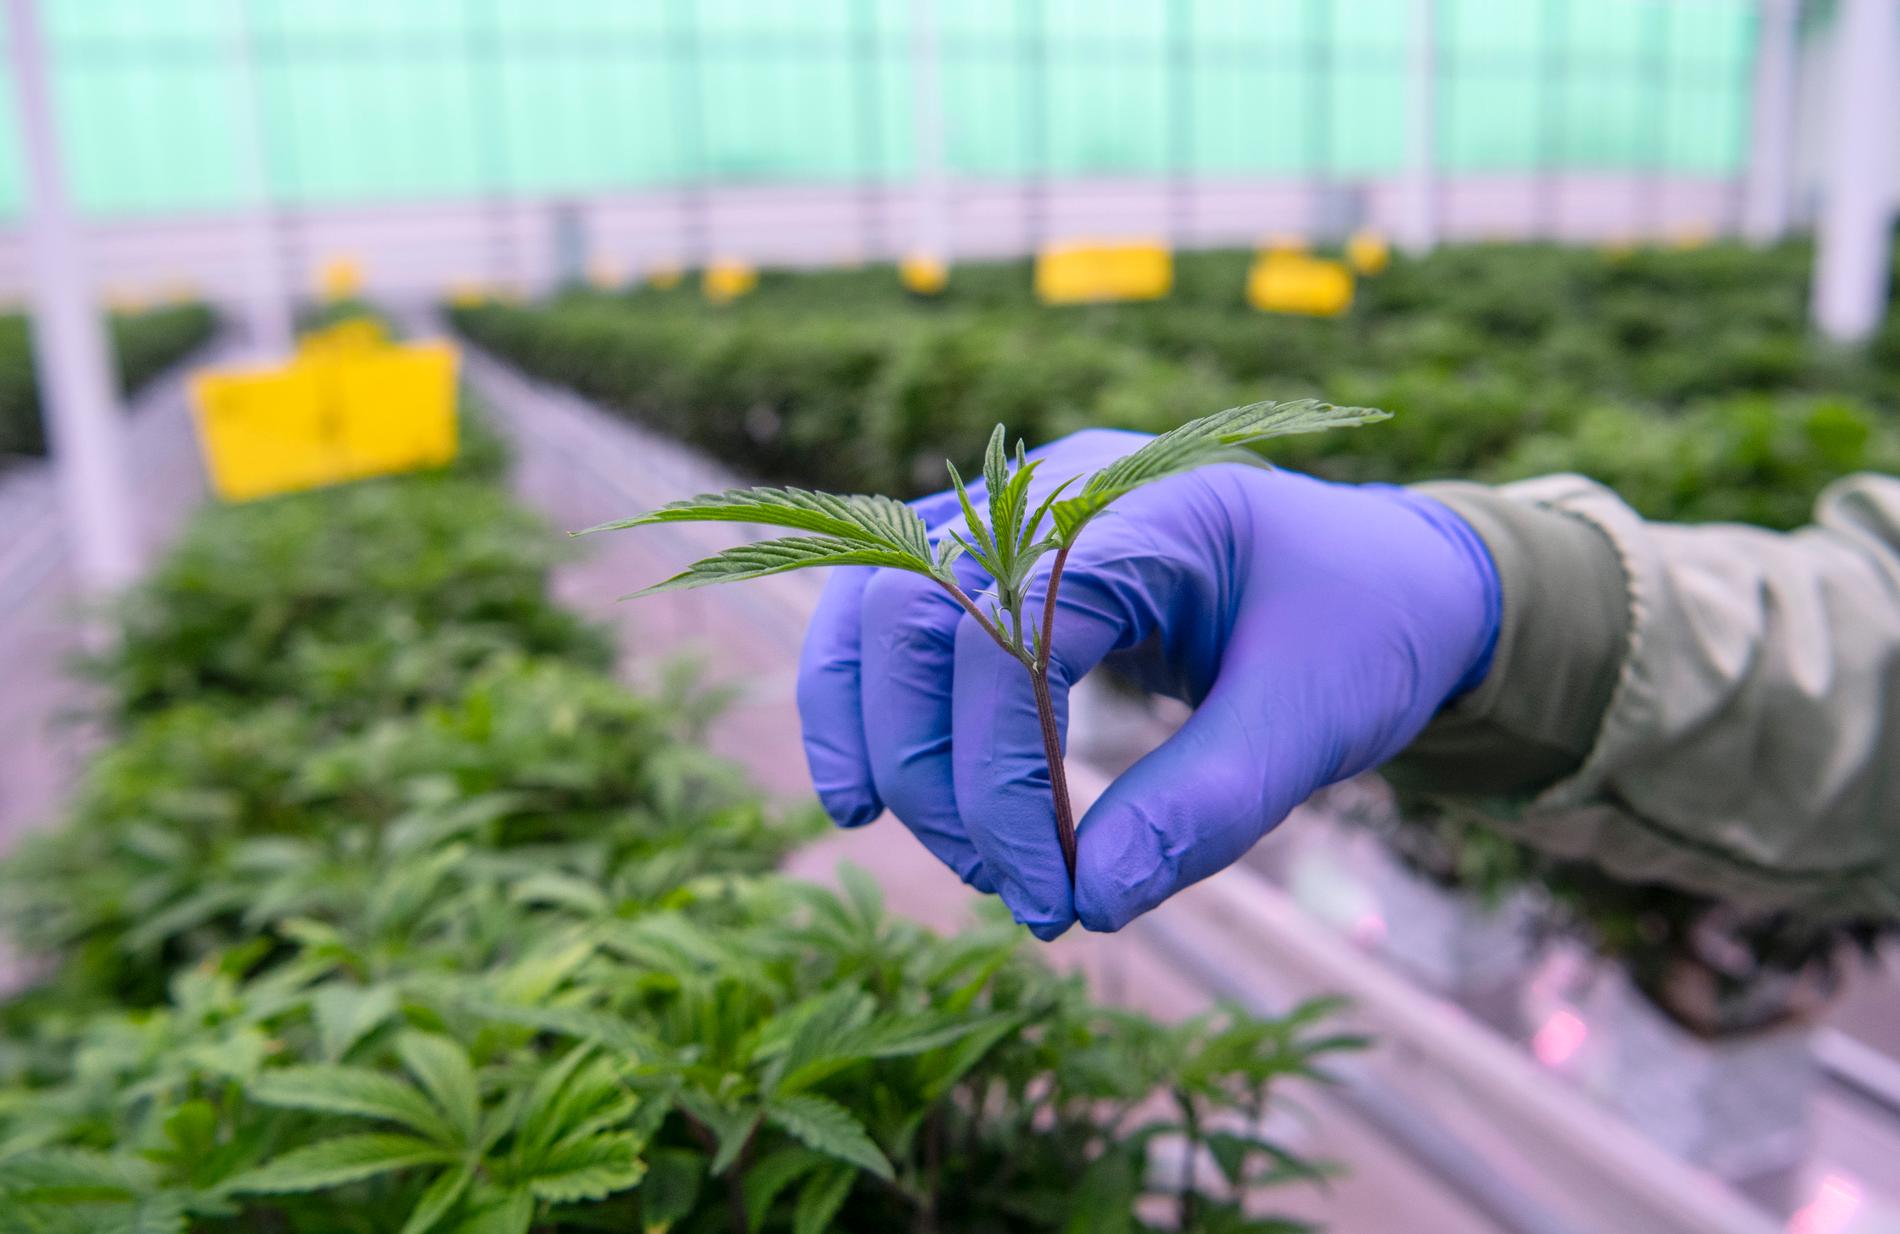 En stickling från en honplanta i en anläggning för odling av medicinsk cannabis i Odense i Danmark 2019.